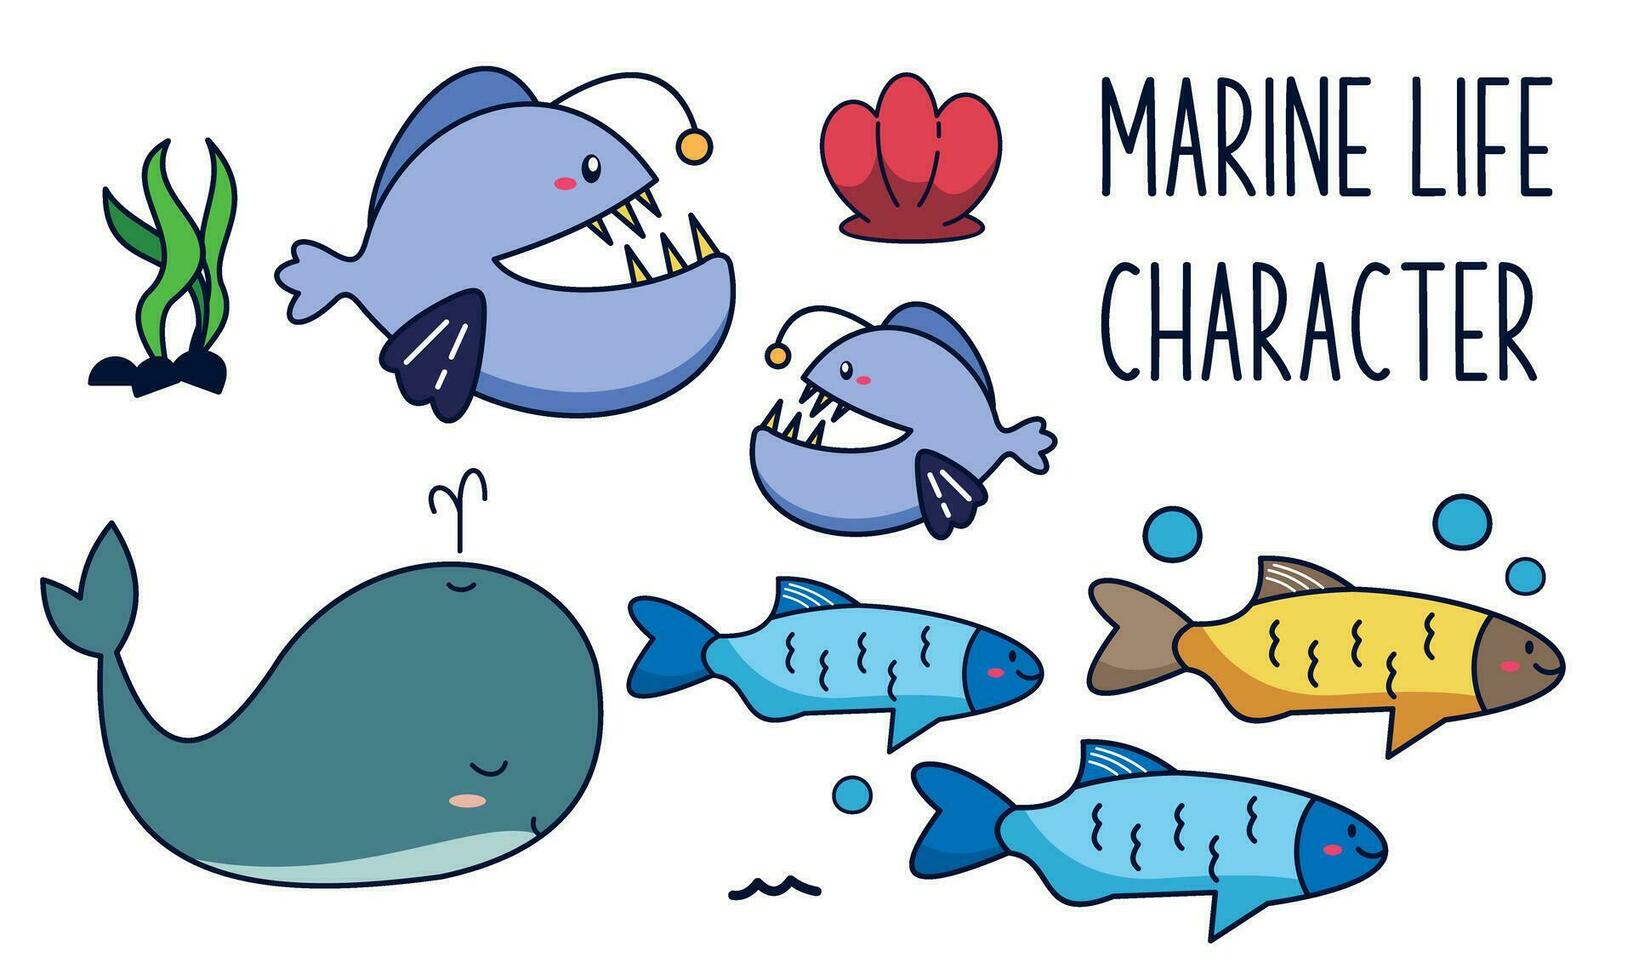 marin liv vektor tecknad serie hav karaktär